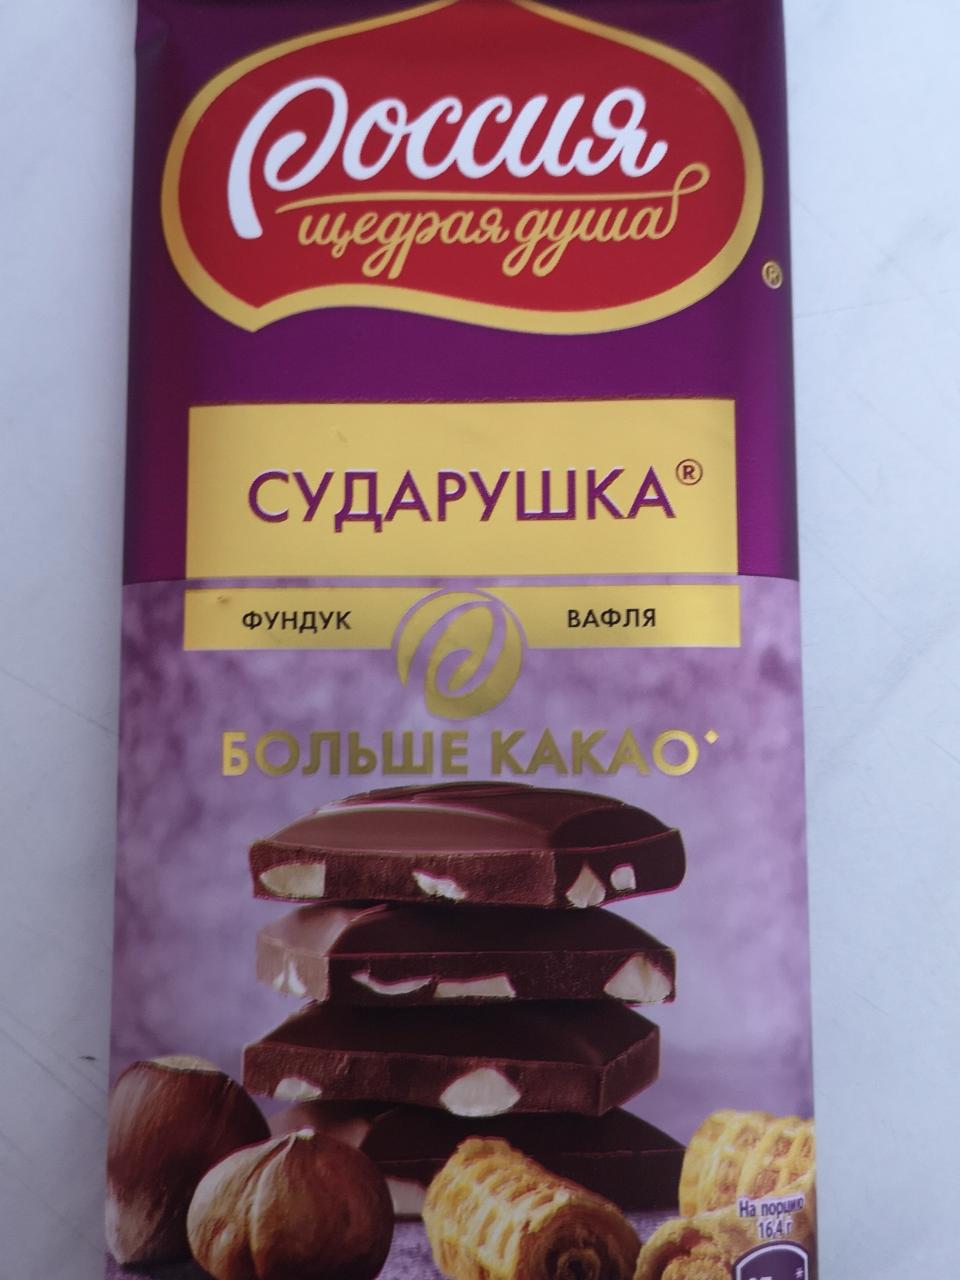 Фото - Молочный шоколад Сударушка с изюмом и арахисом Россия Щедрая Душа